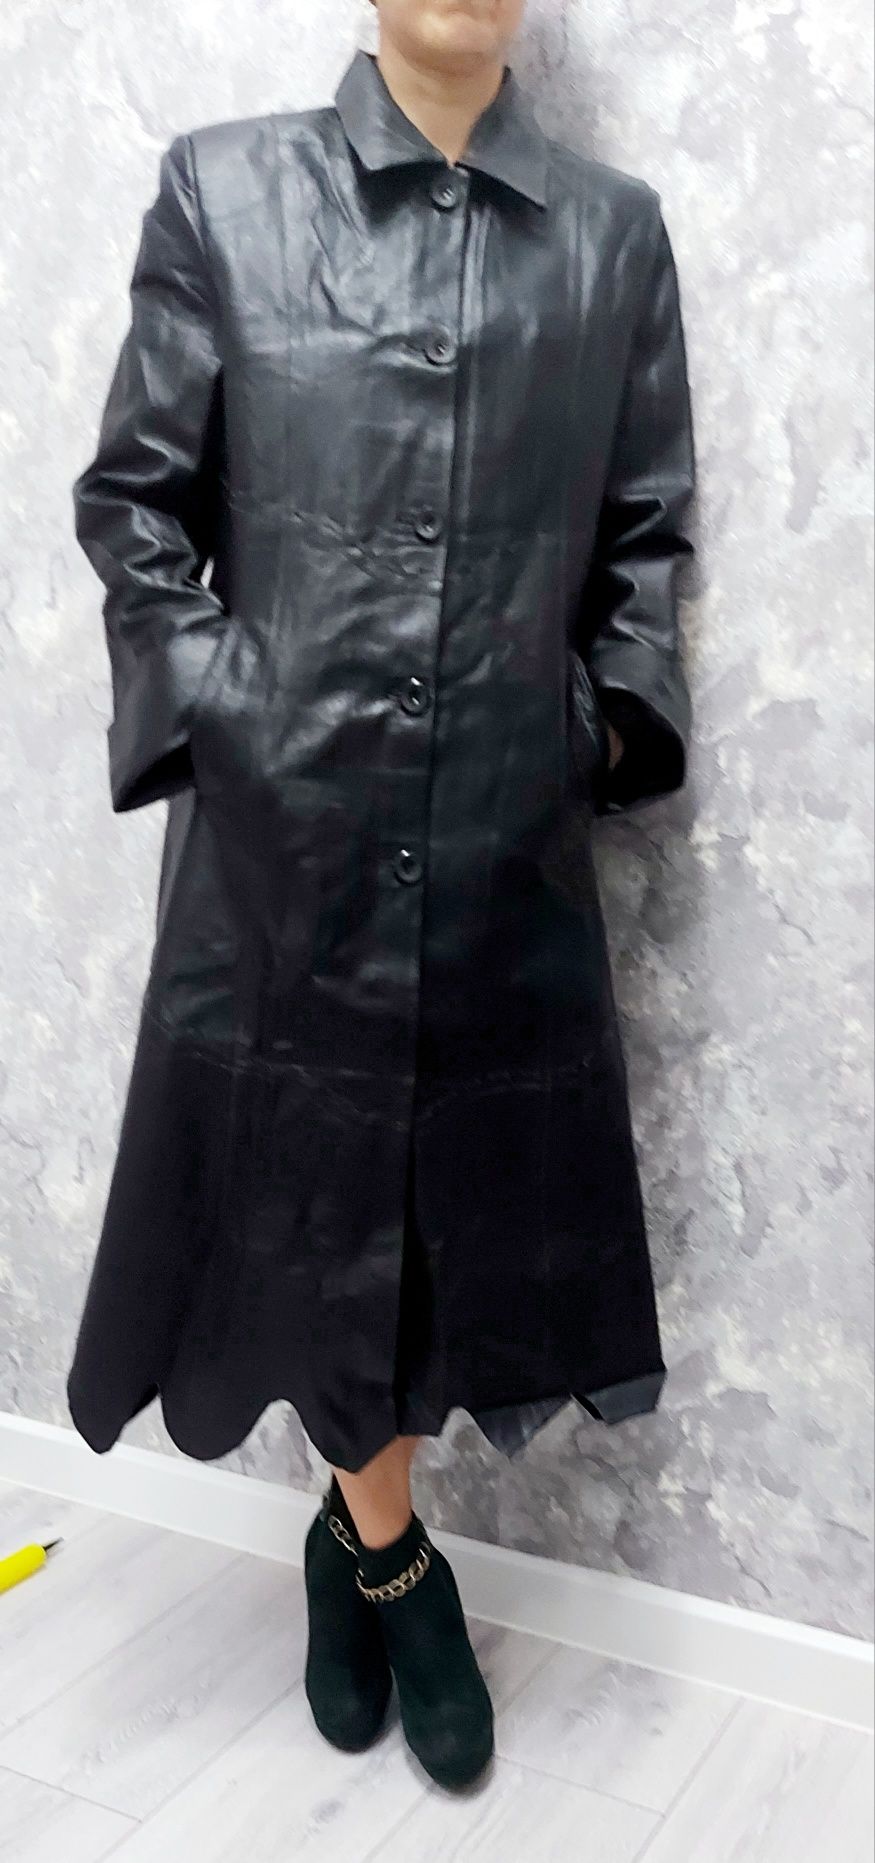 Плащ натуральная кожа, 46 размер, чёрный, новый и подстежки от курток